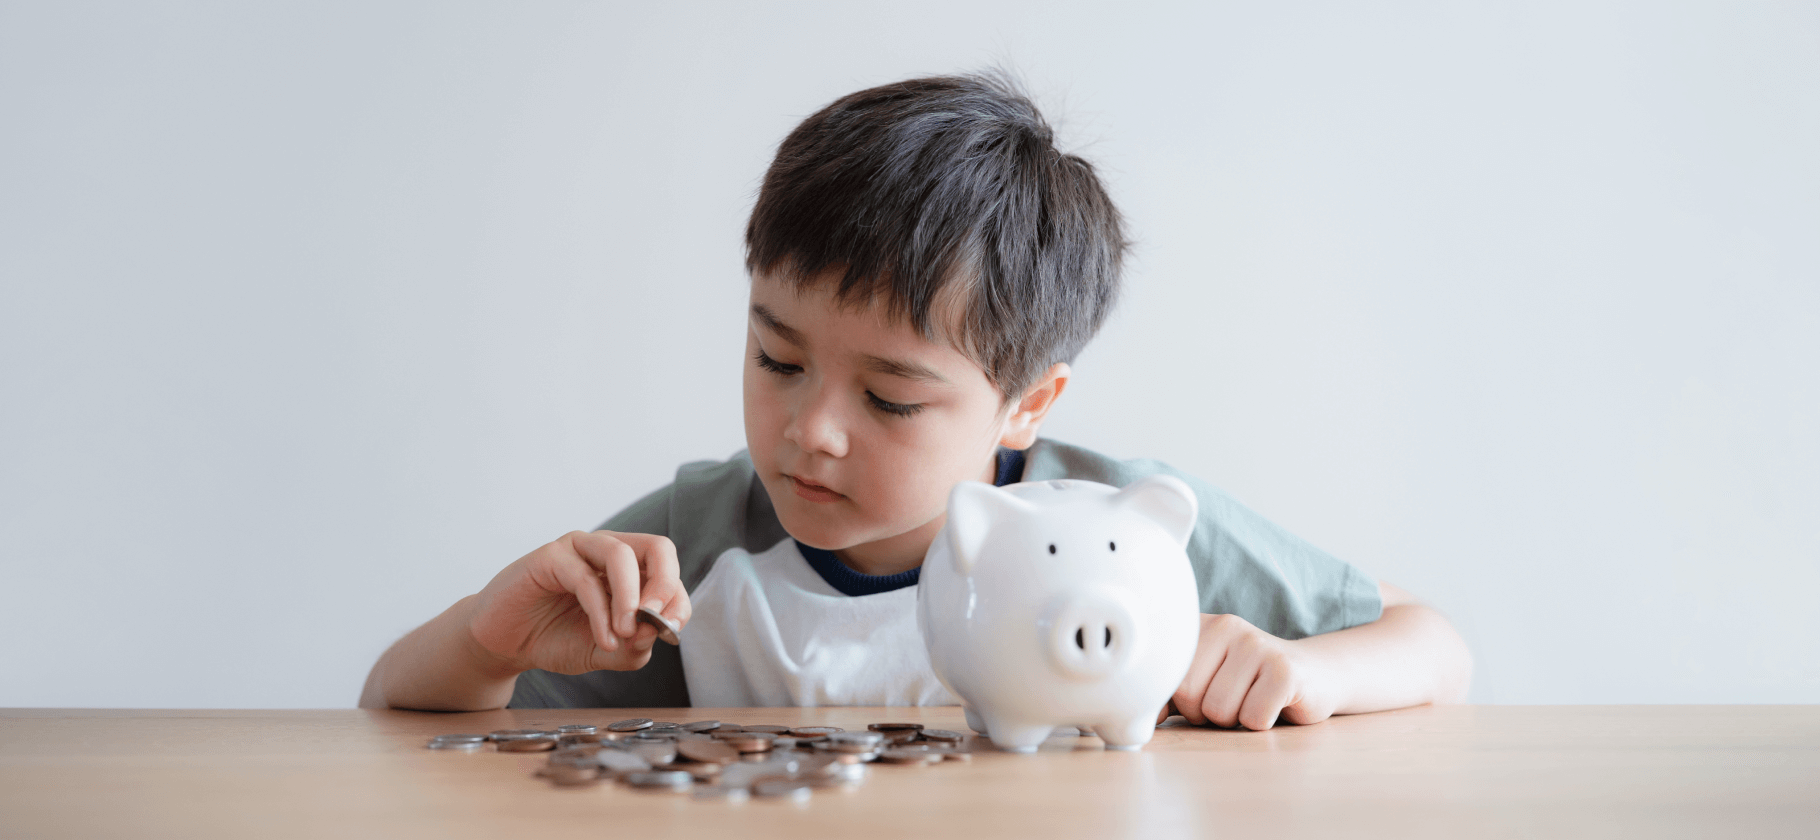 Как обсуждать деньги с детьми разного возраста: советы финансового педагога